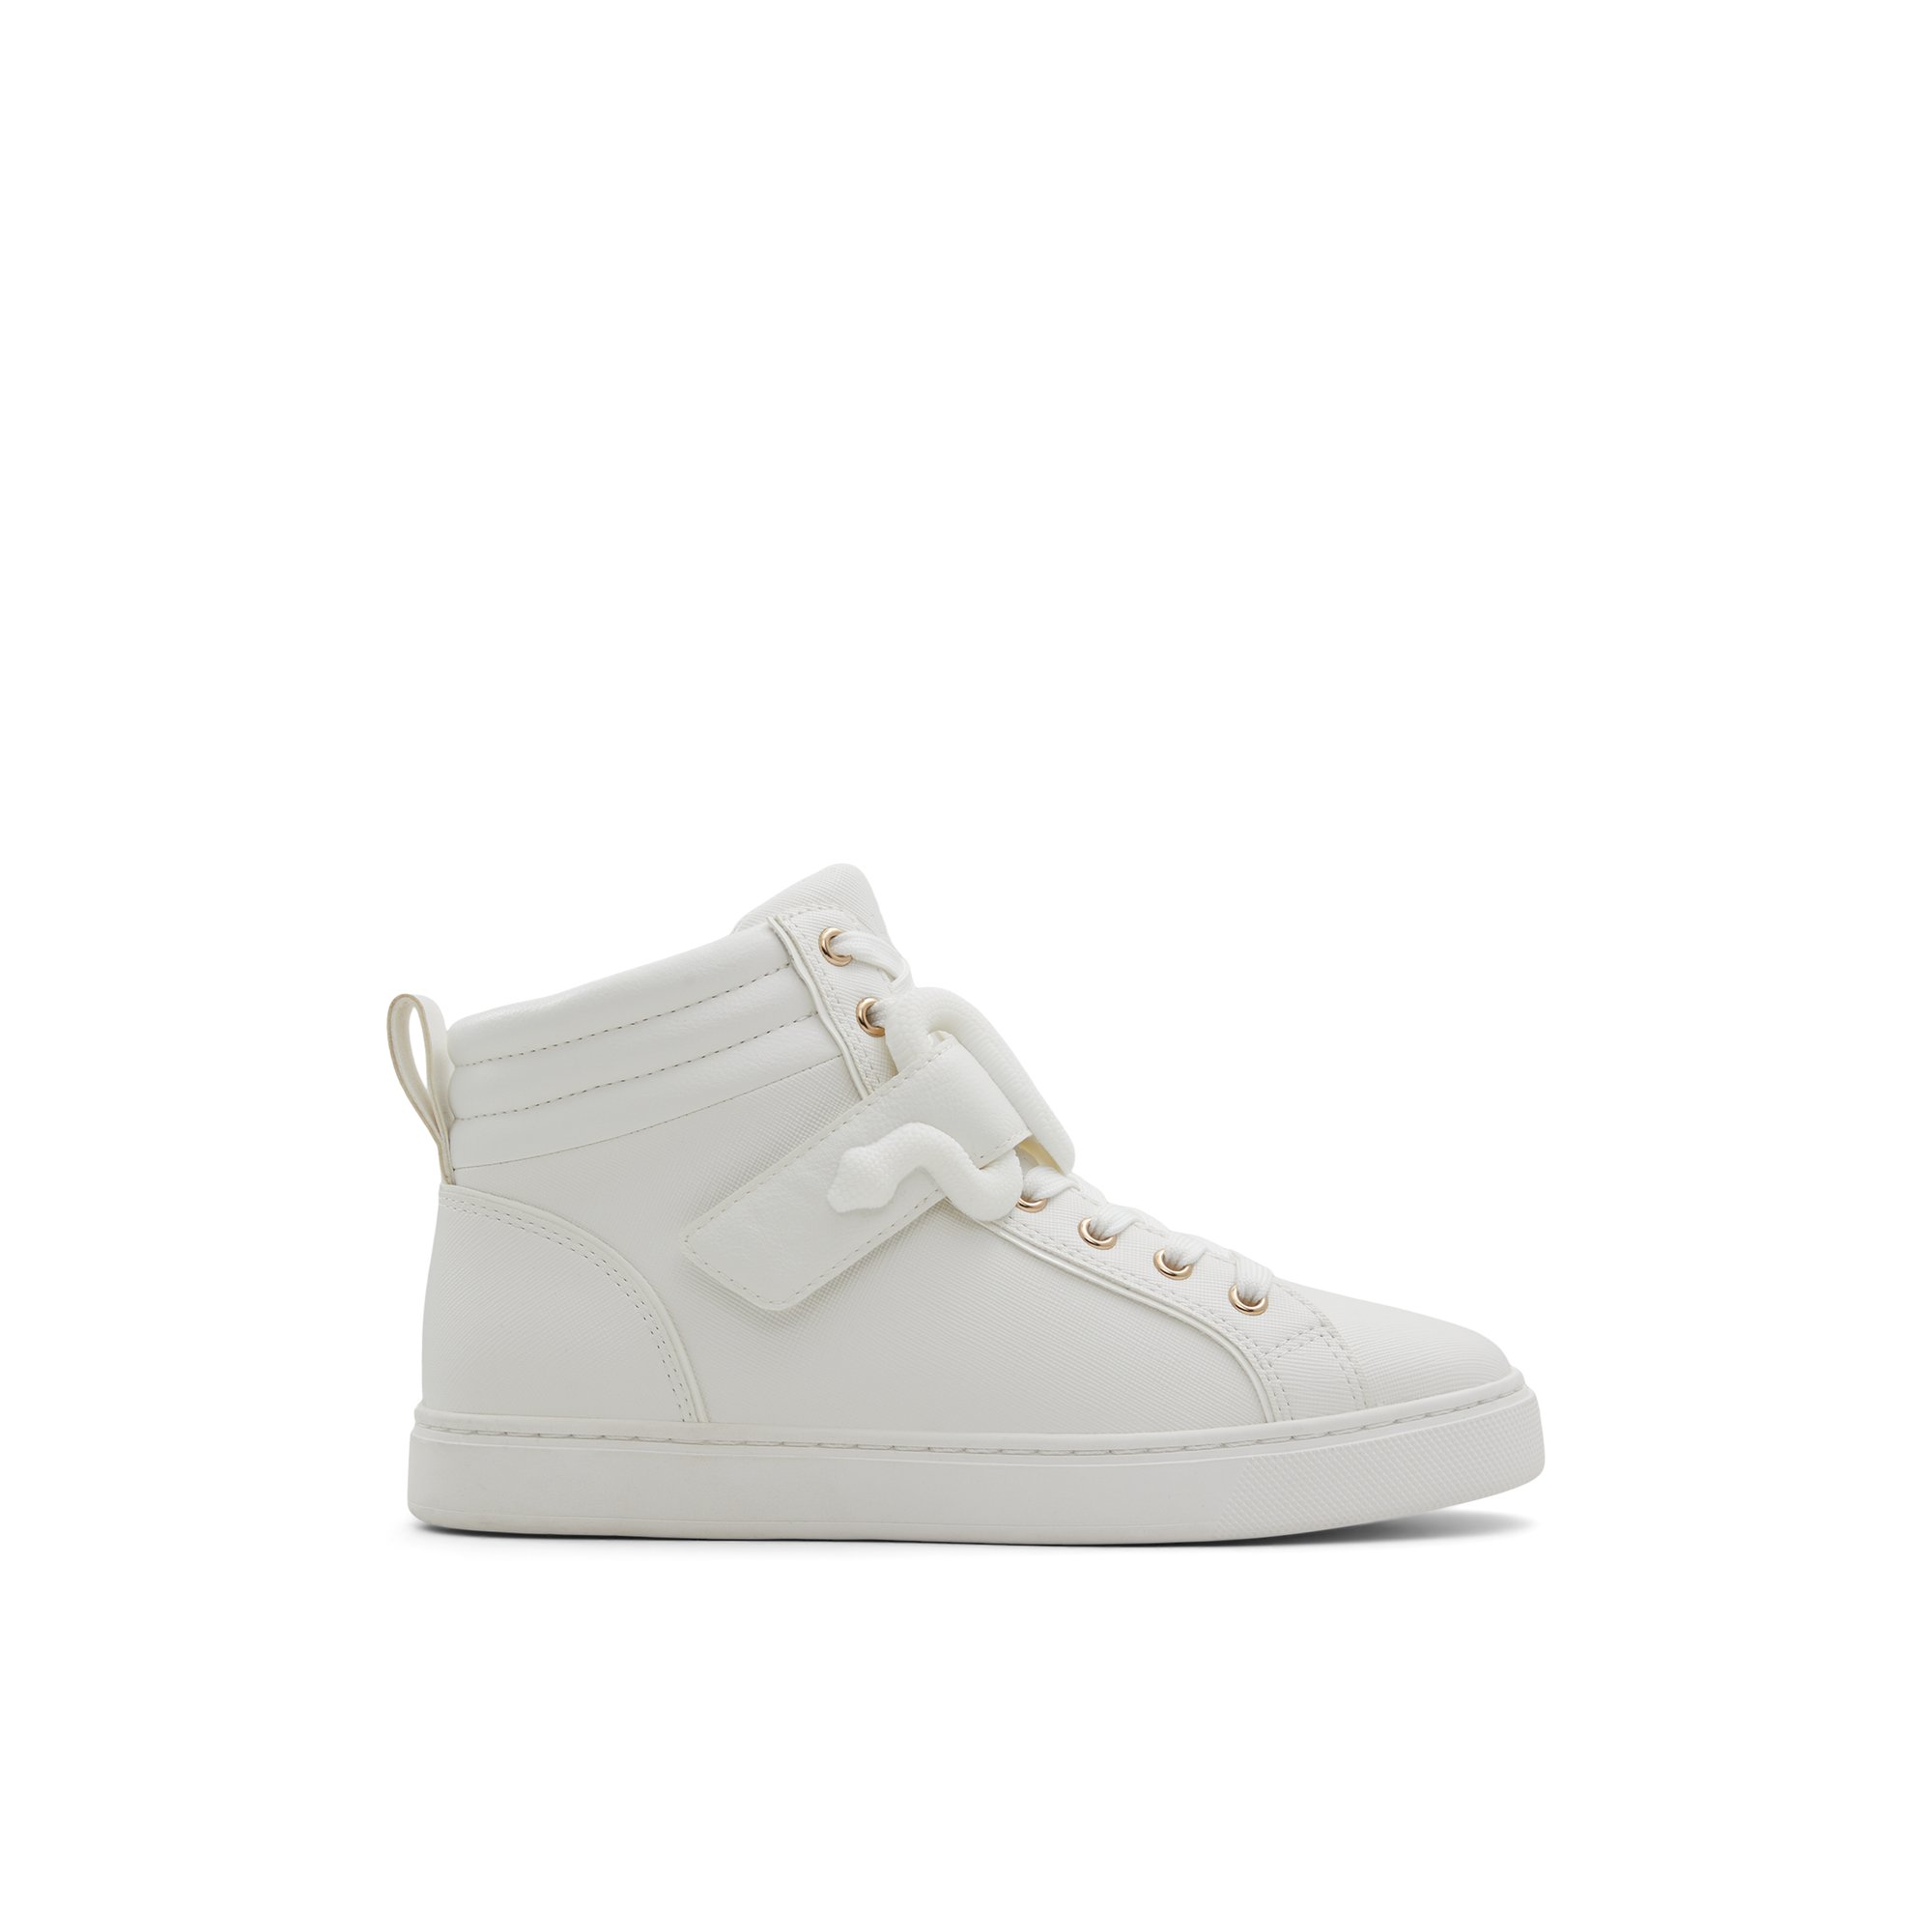 ALDO Dwia - Women's High Top Sneaker Sneakers - White